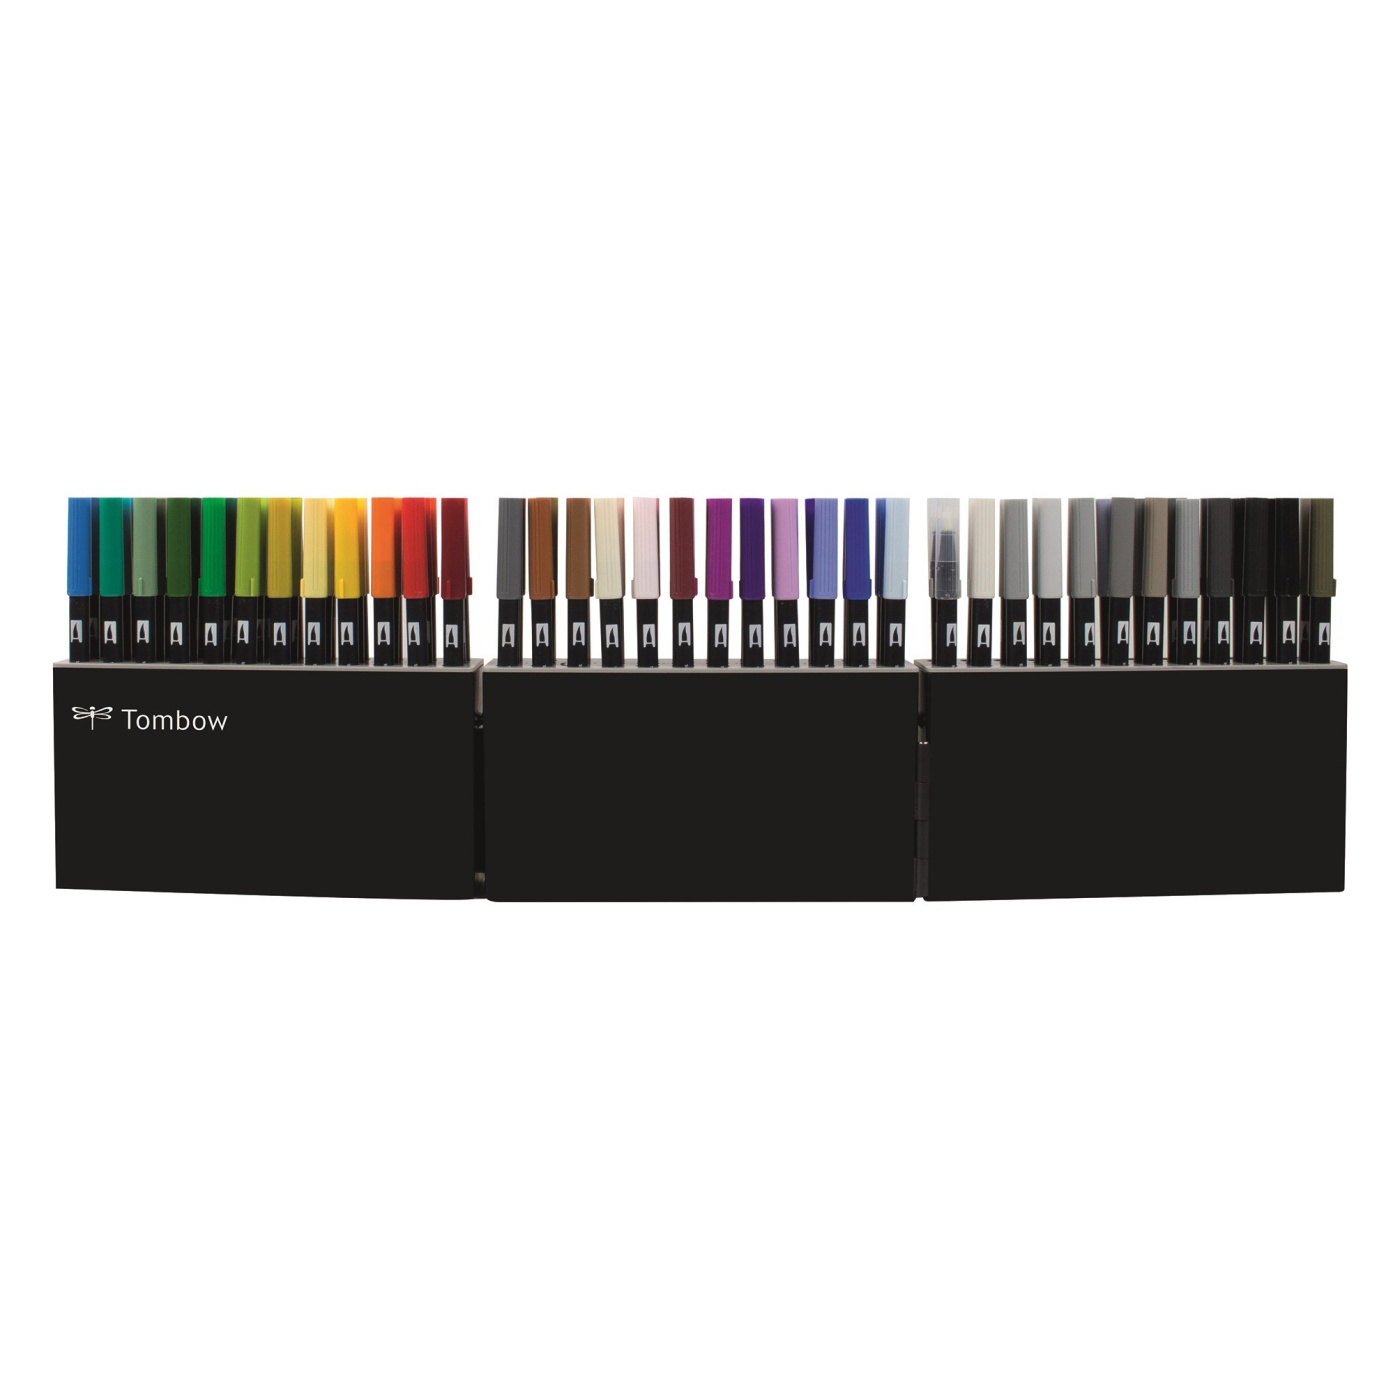 ABT Dual Brush Pen Box Case 108 Set in de groep Pennen / Kunstenaarspotloden en -stiften / Penseelstiften bij Voorcrea (101109)